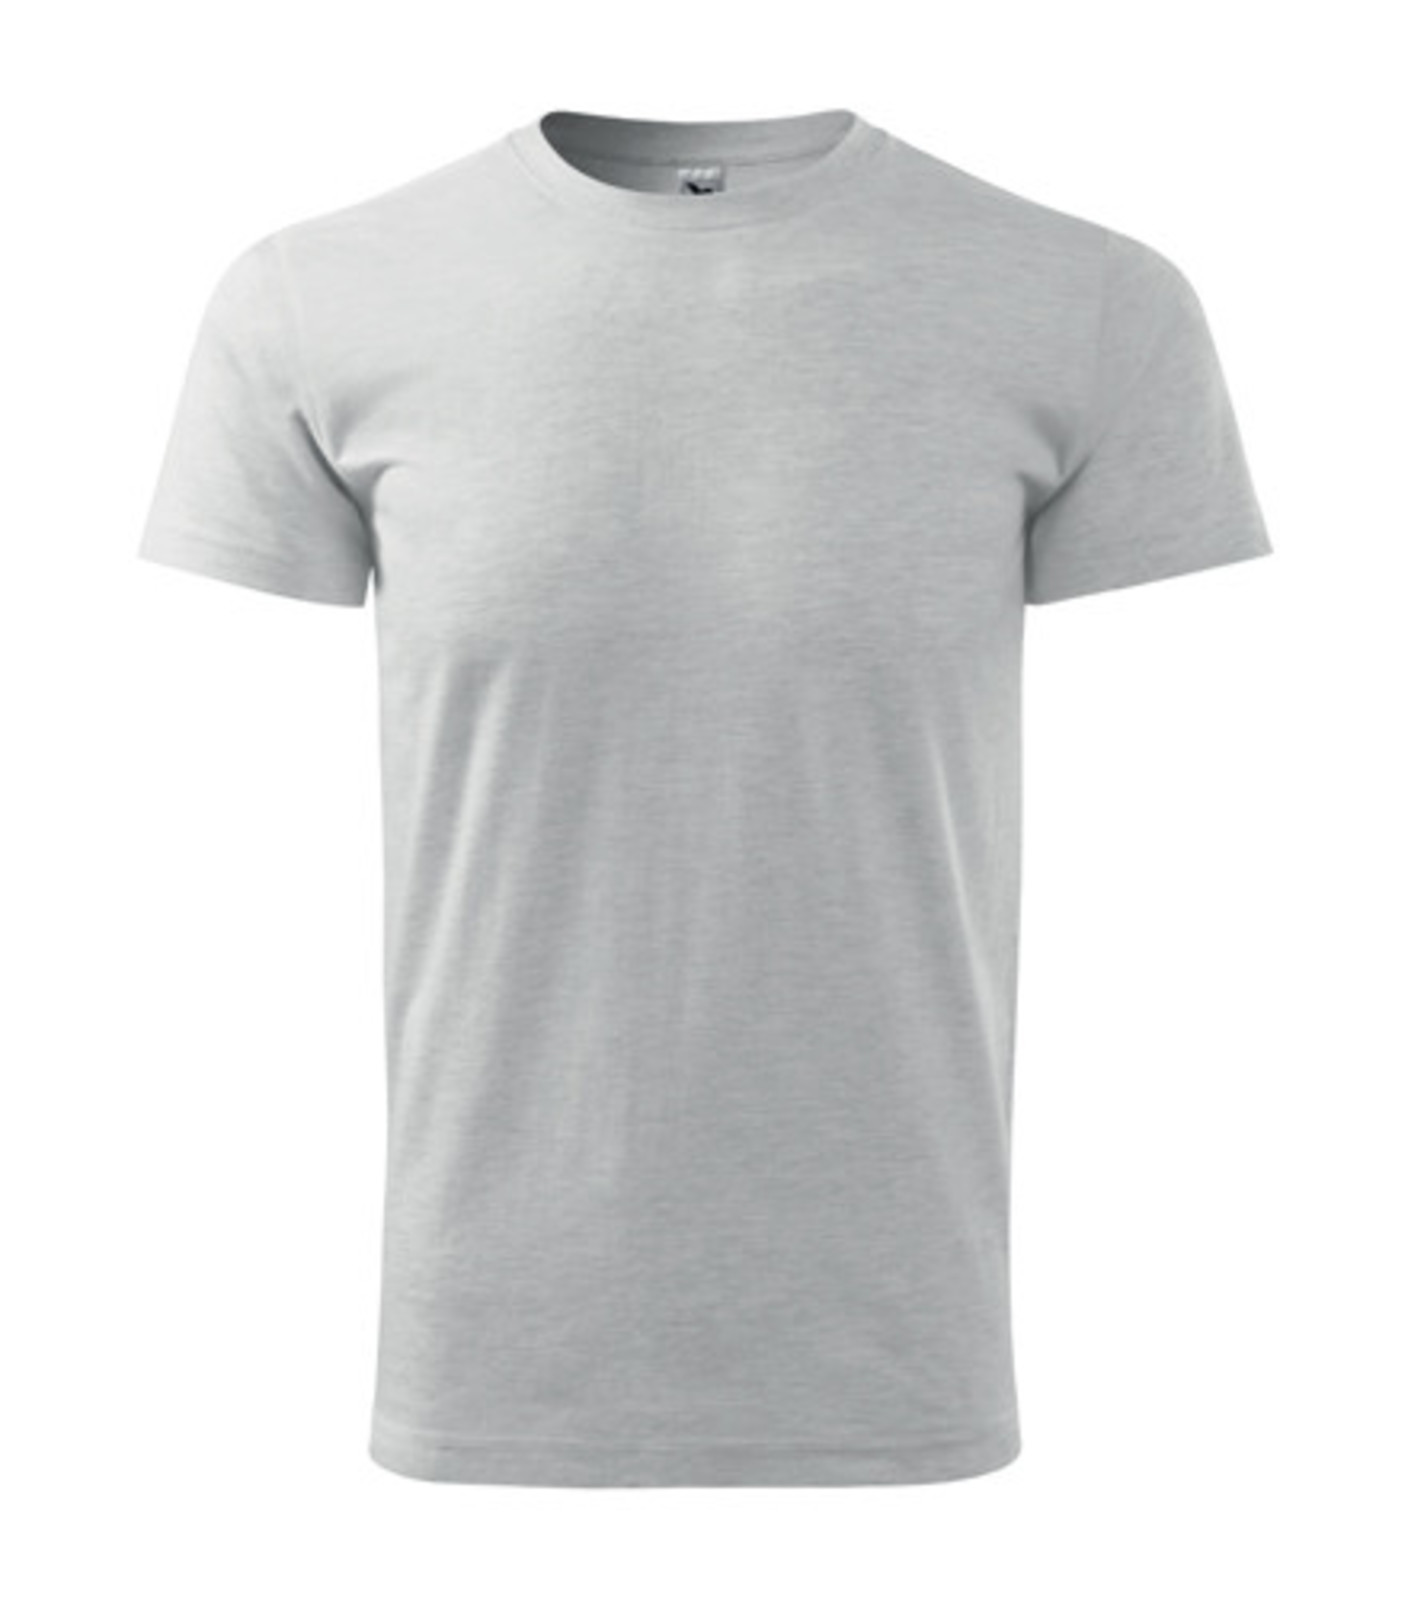 Unisex tričko Malfini Heavy New 137 - veľkosť: L, farba: svetlosivý melír